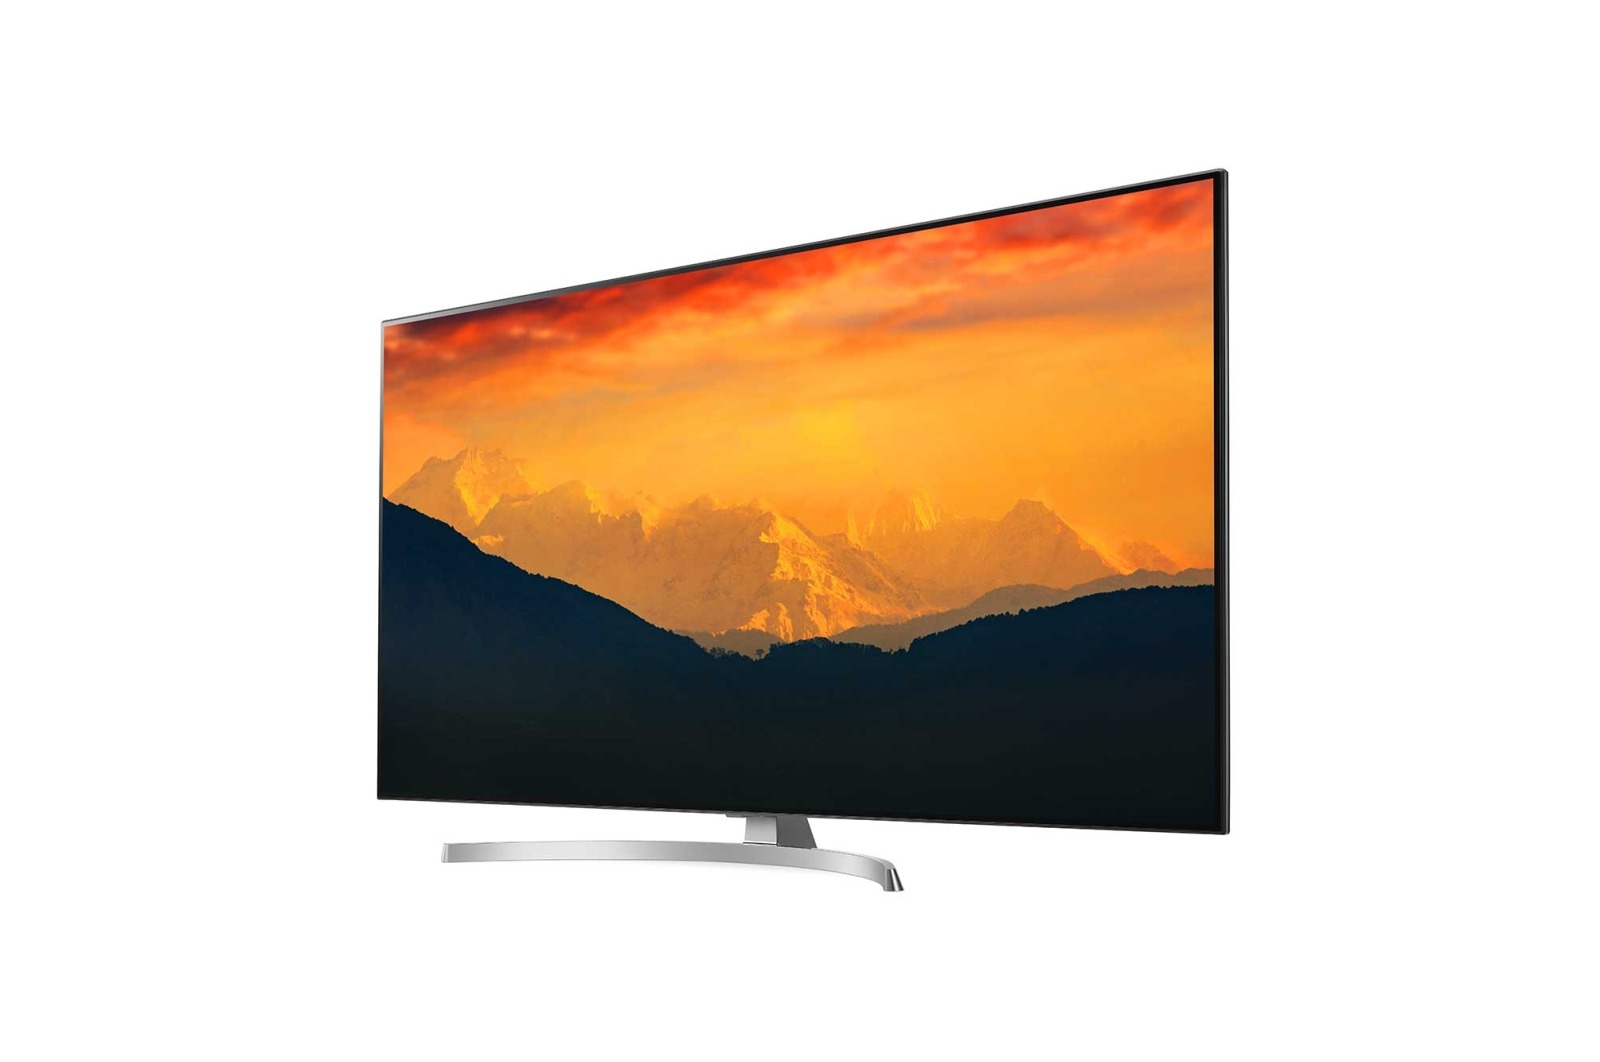 Review: LG SUPER UHD 4K TV 65SK8550